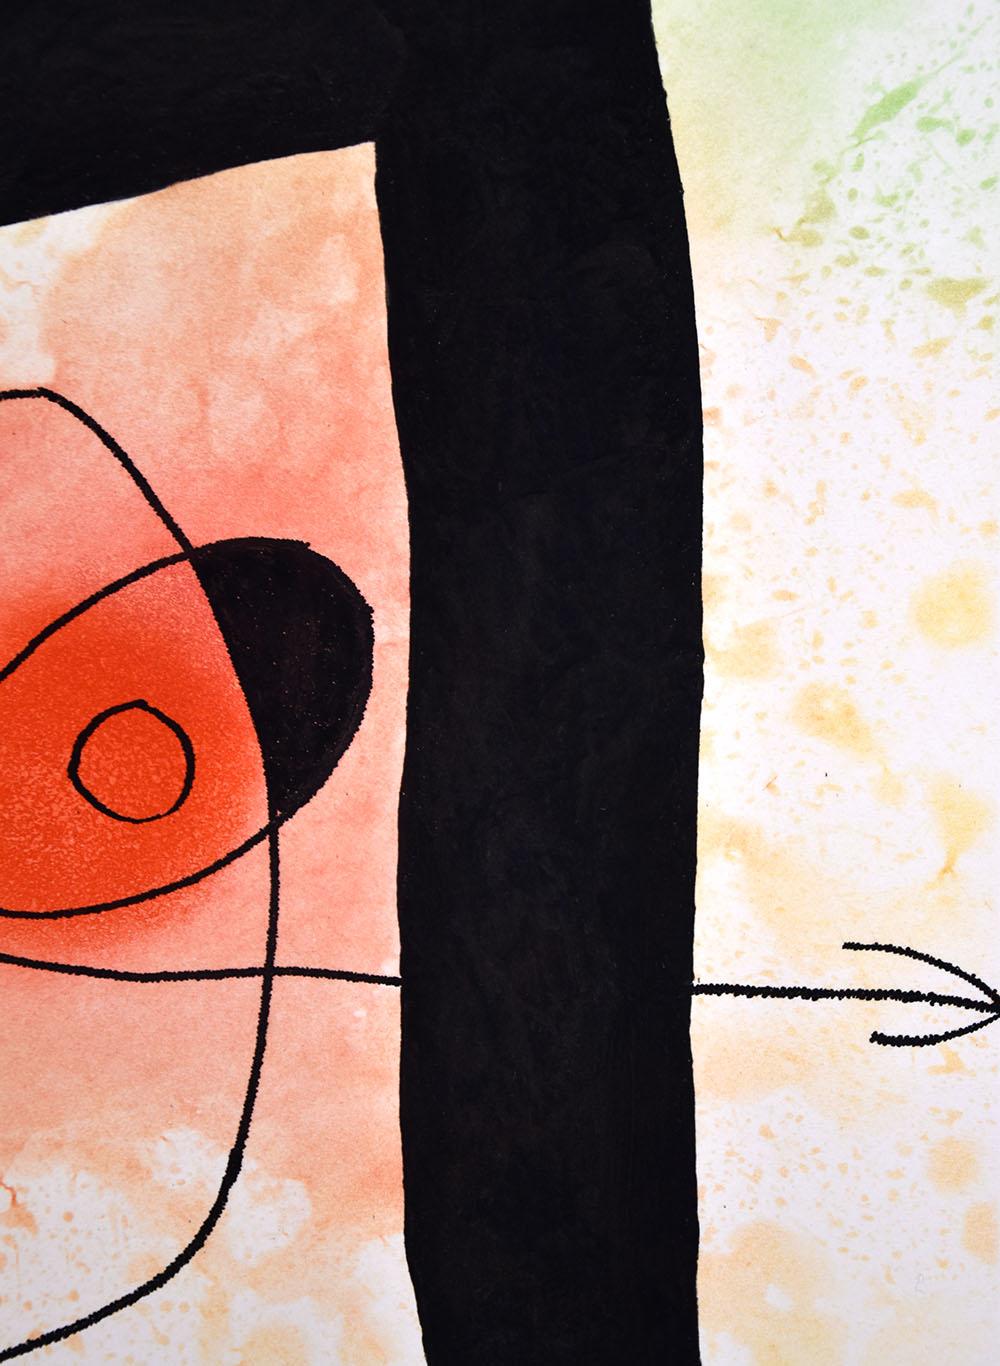 La Calebasse (The Gourd), 1969 - Modern Print by Joan Miró